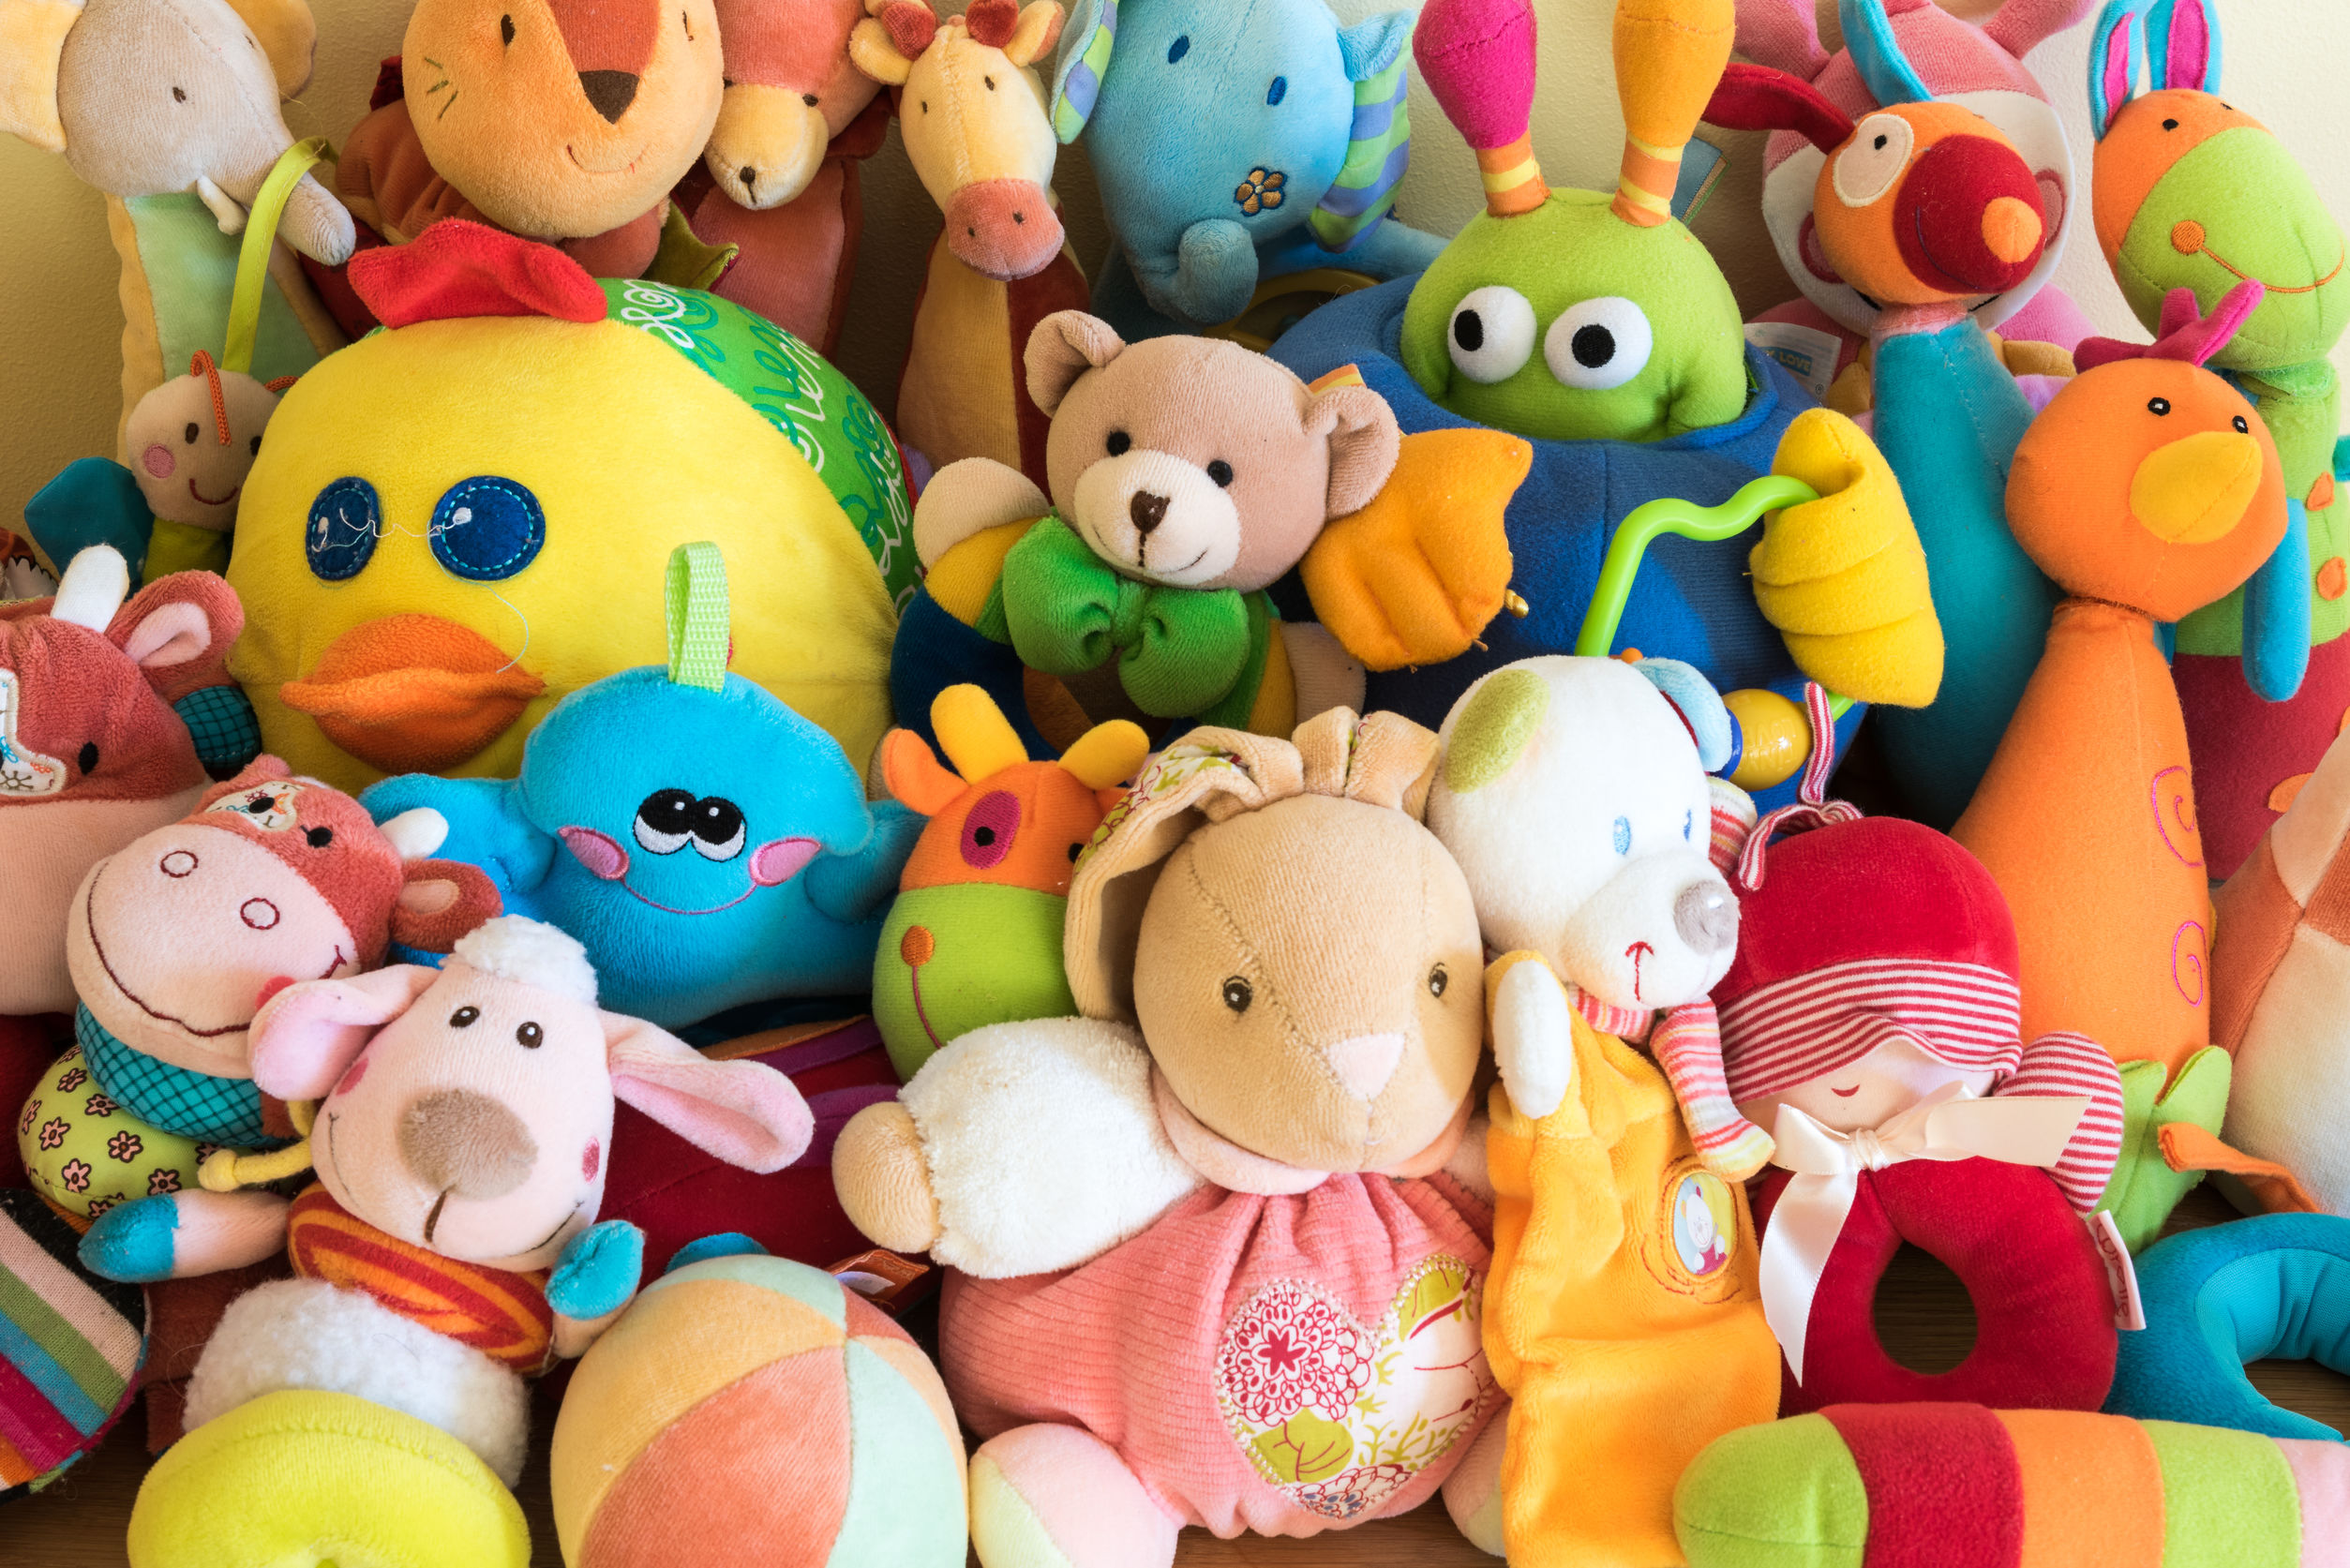 קנו צעצועי ילדים במחירים סבירים בלוח המודעות בישראל